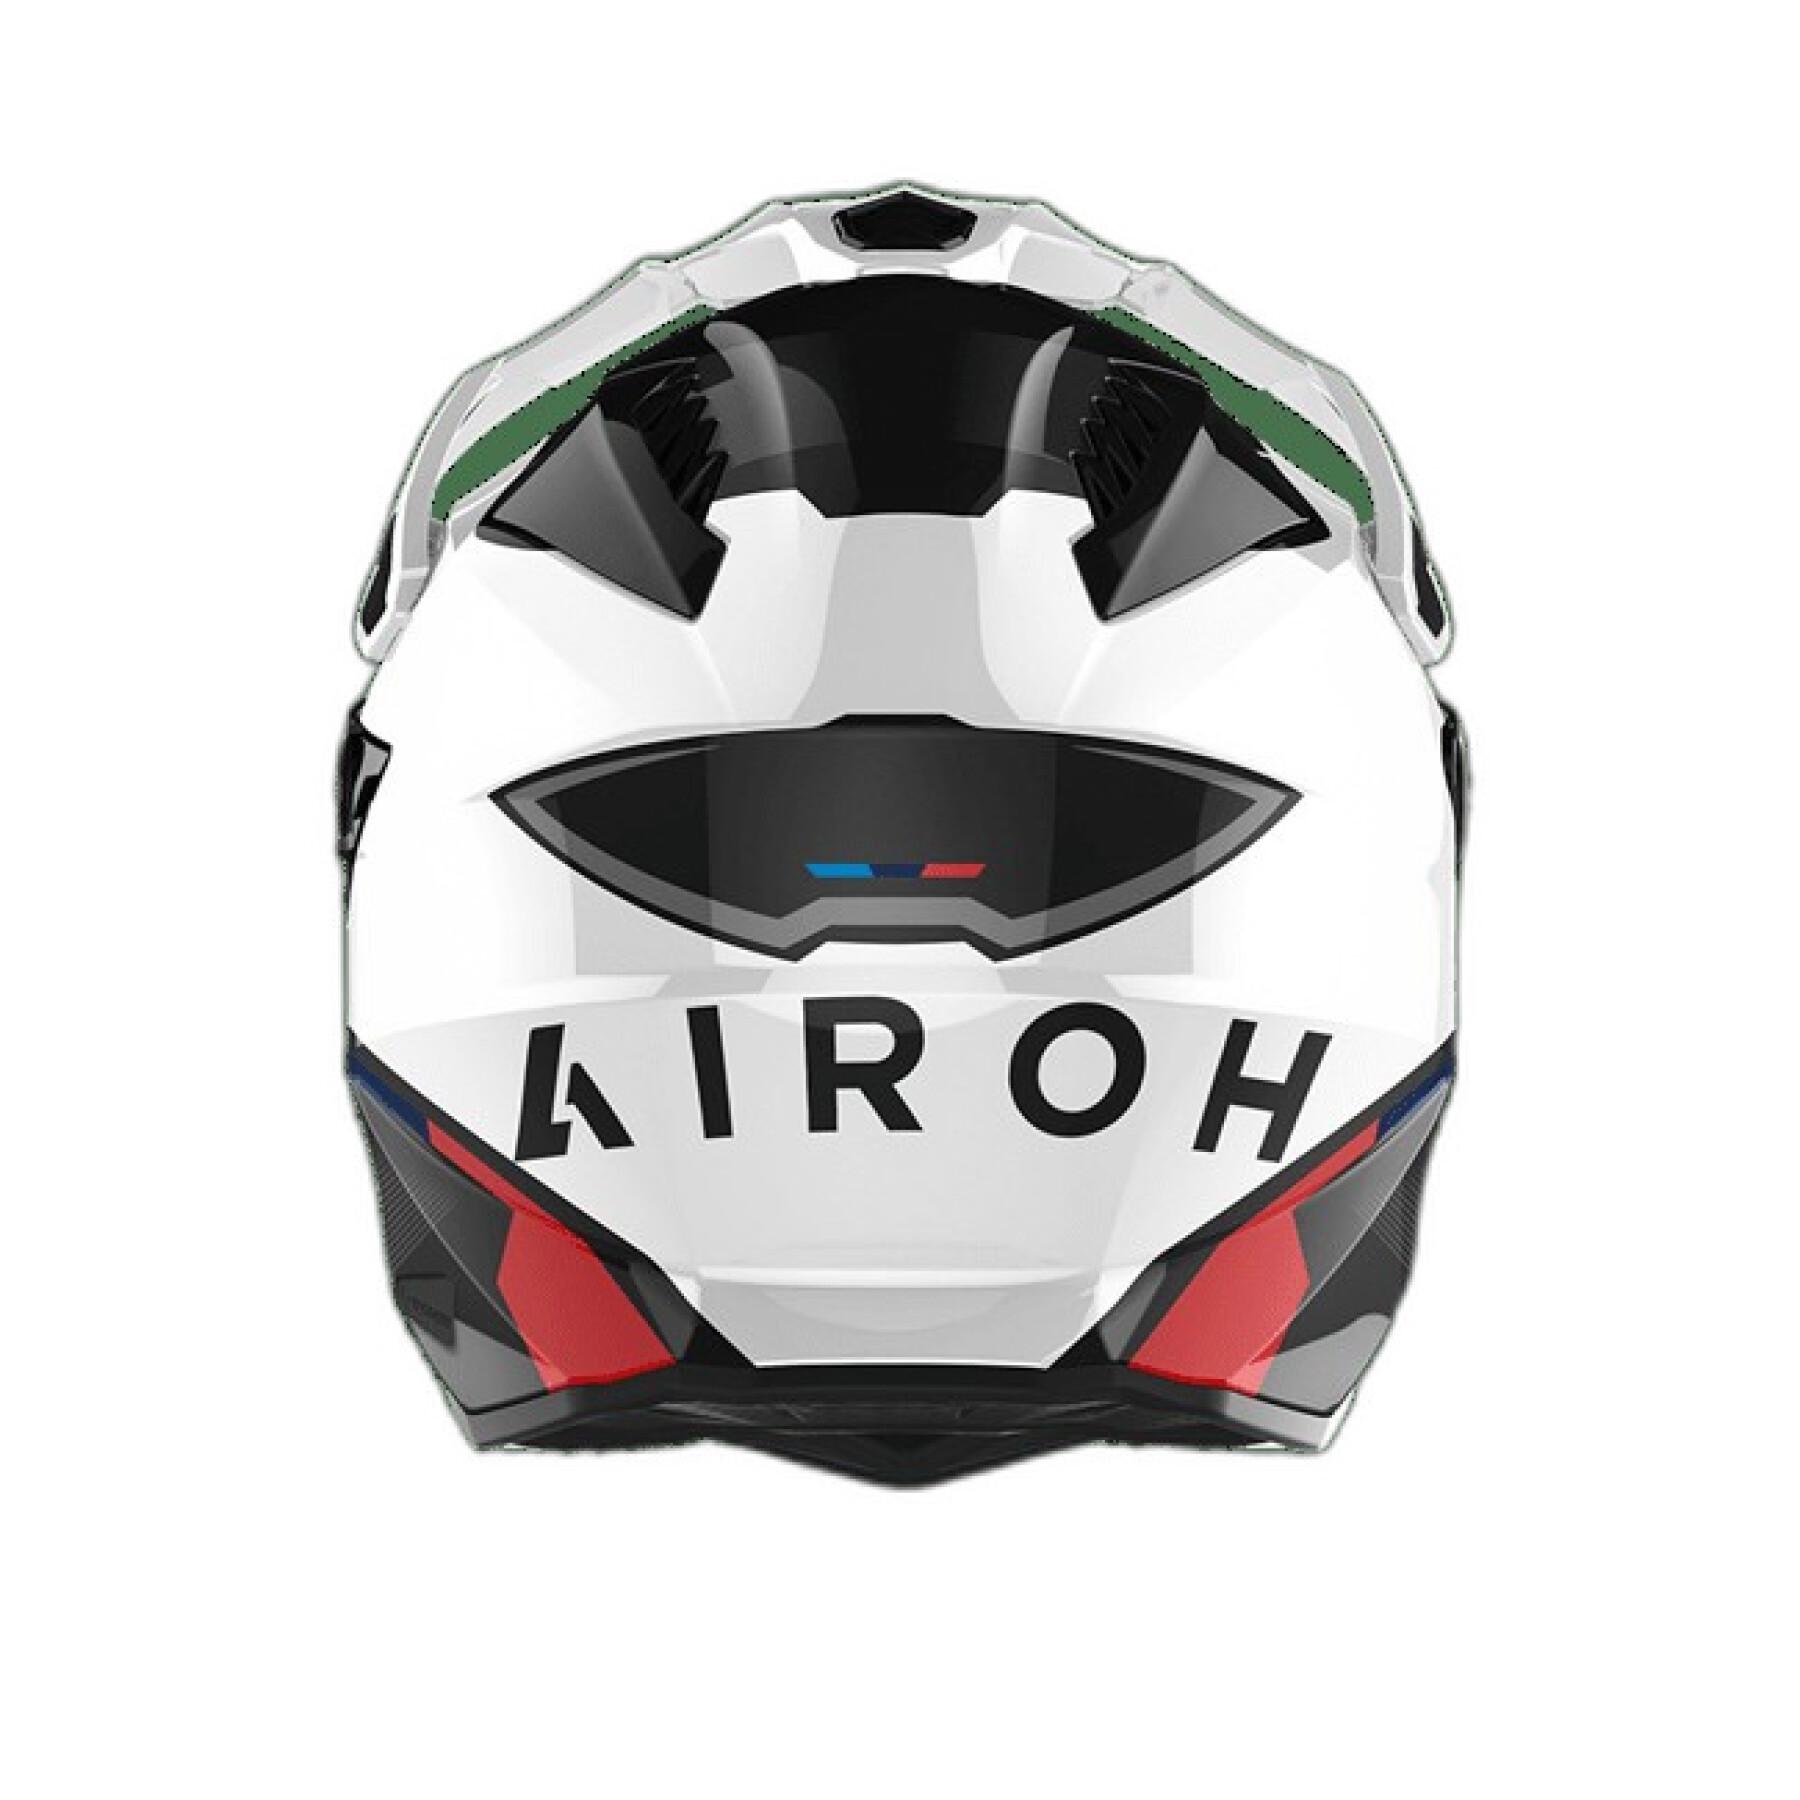 Motorcycle helmet Airoh commander Factor